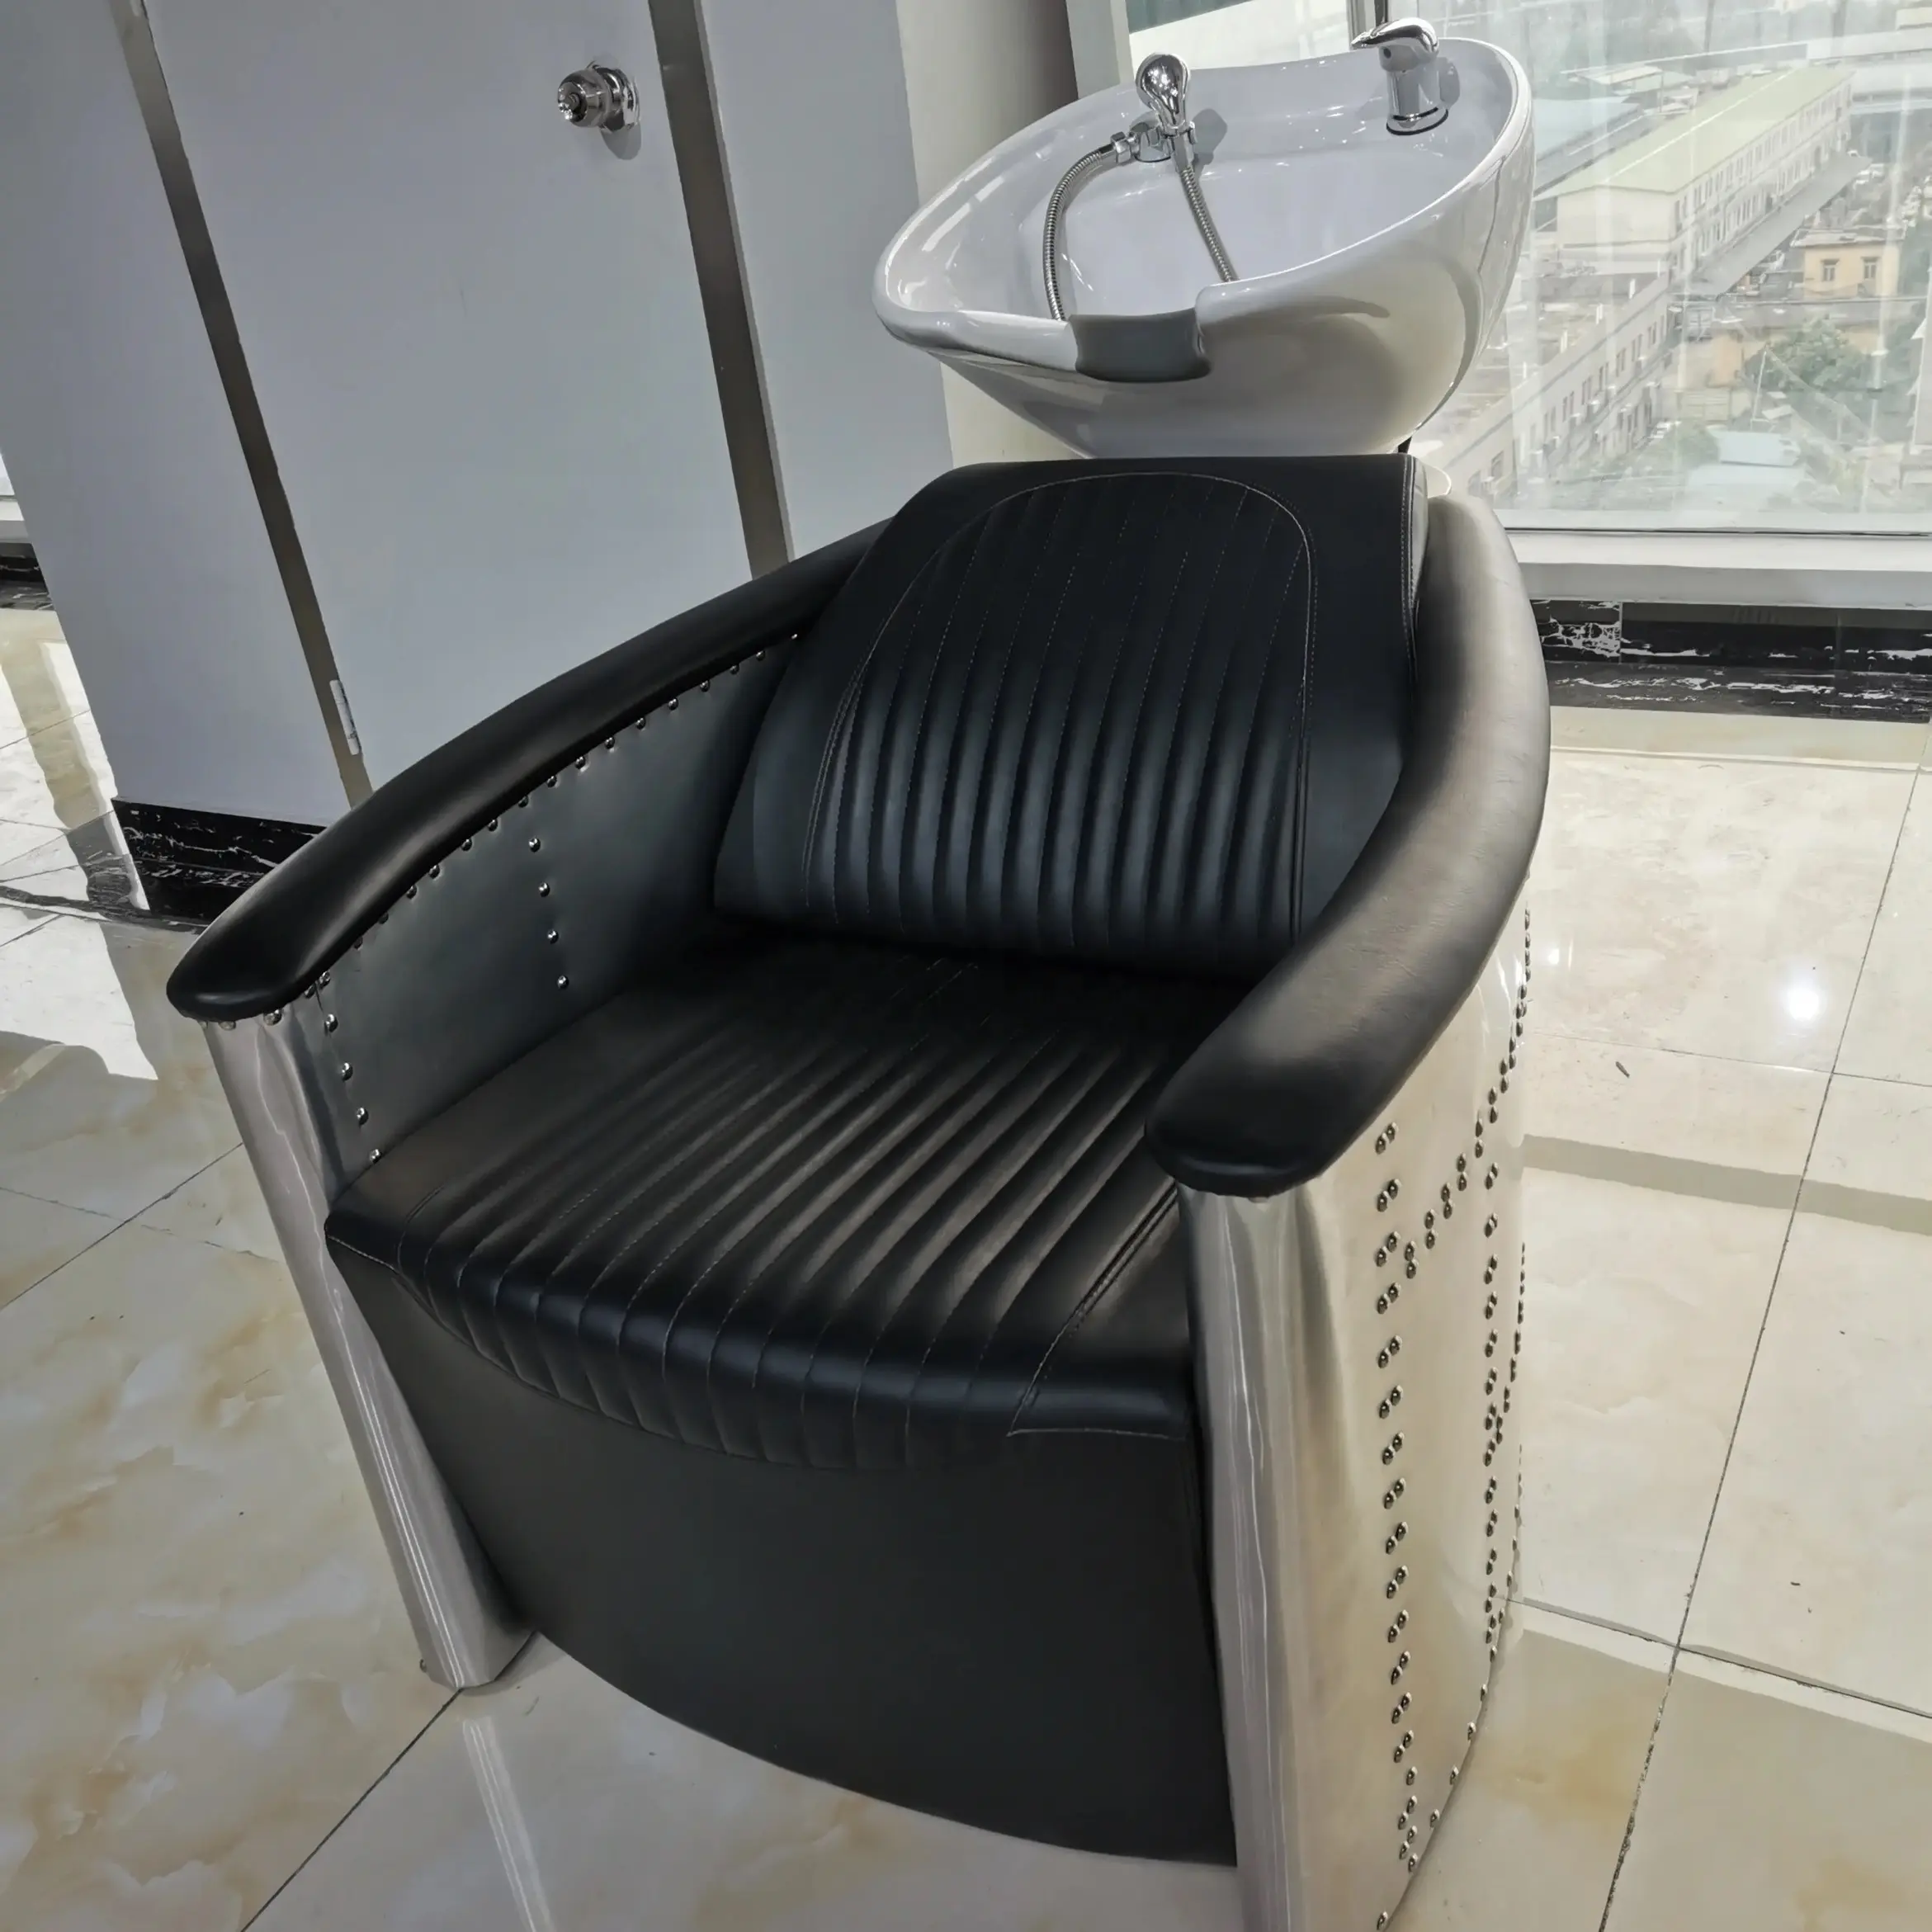 Salon furniture hair salon wash basin sink standing Shampoo Chairs for salon